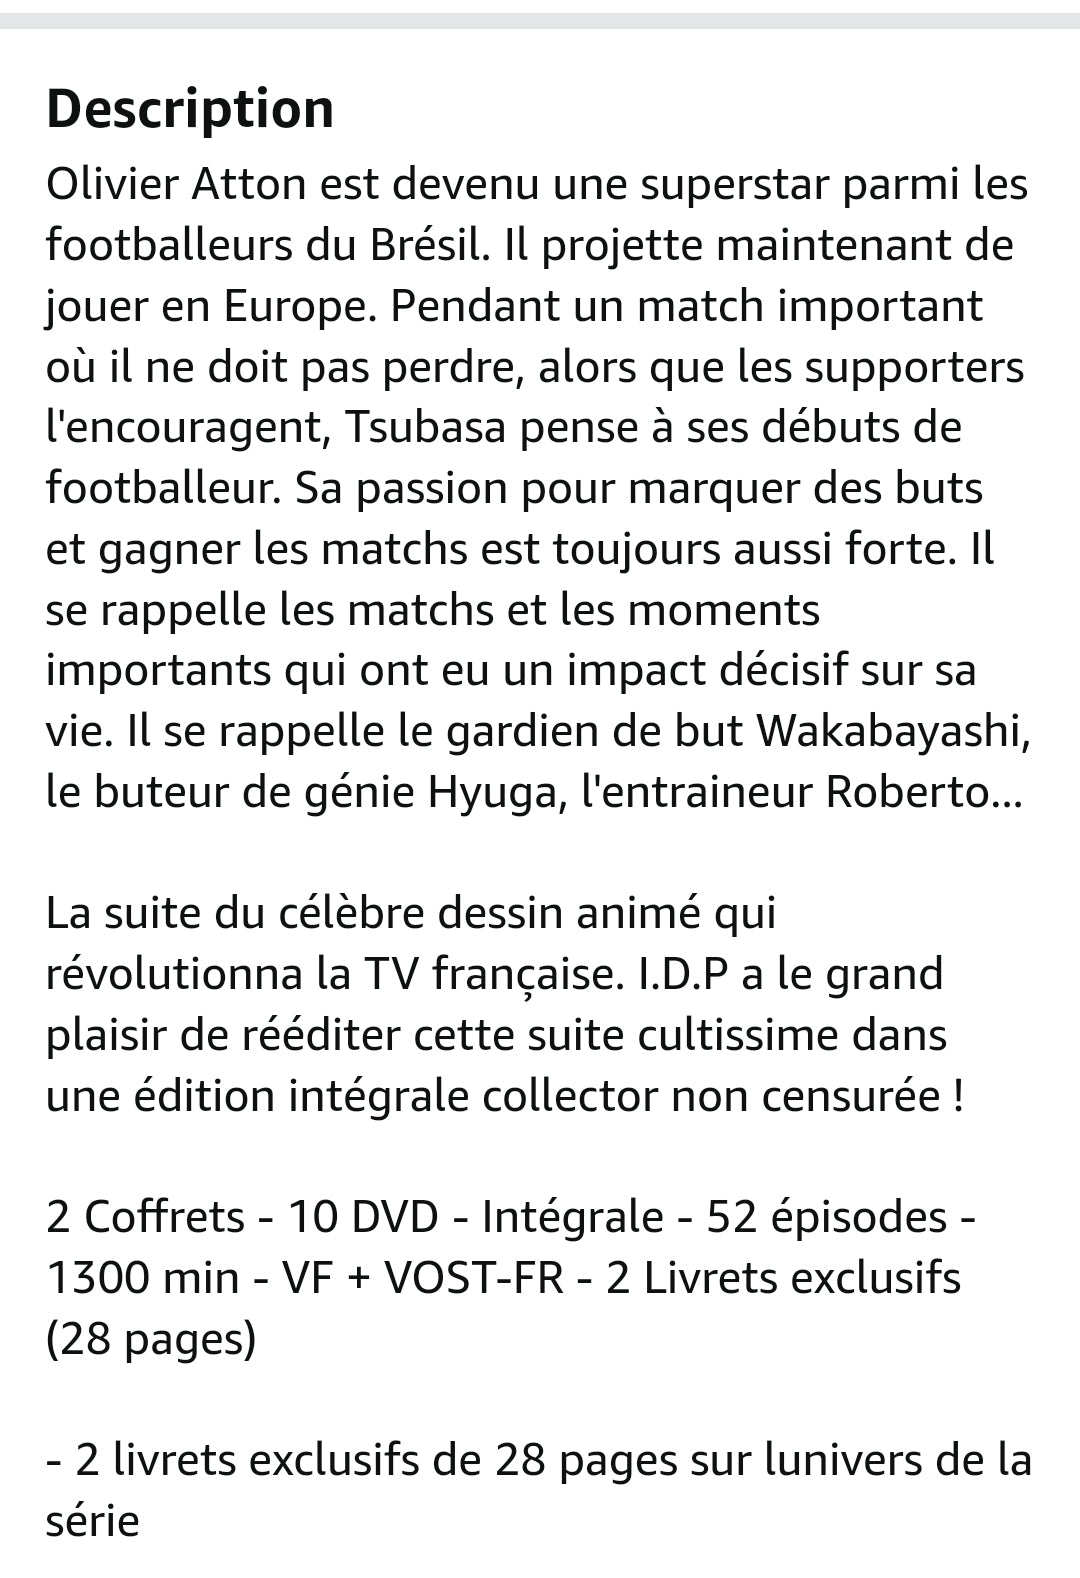 Dvd olive et tom le retour coffret 10 dvd l'integrale de la nouvelle serie captain tsubasa